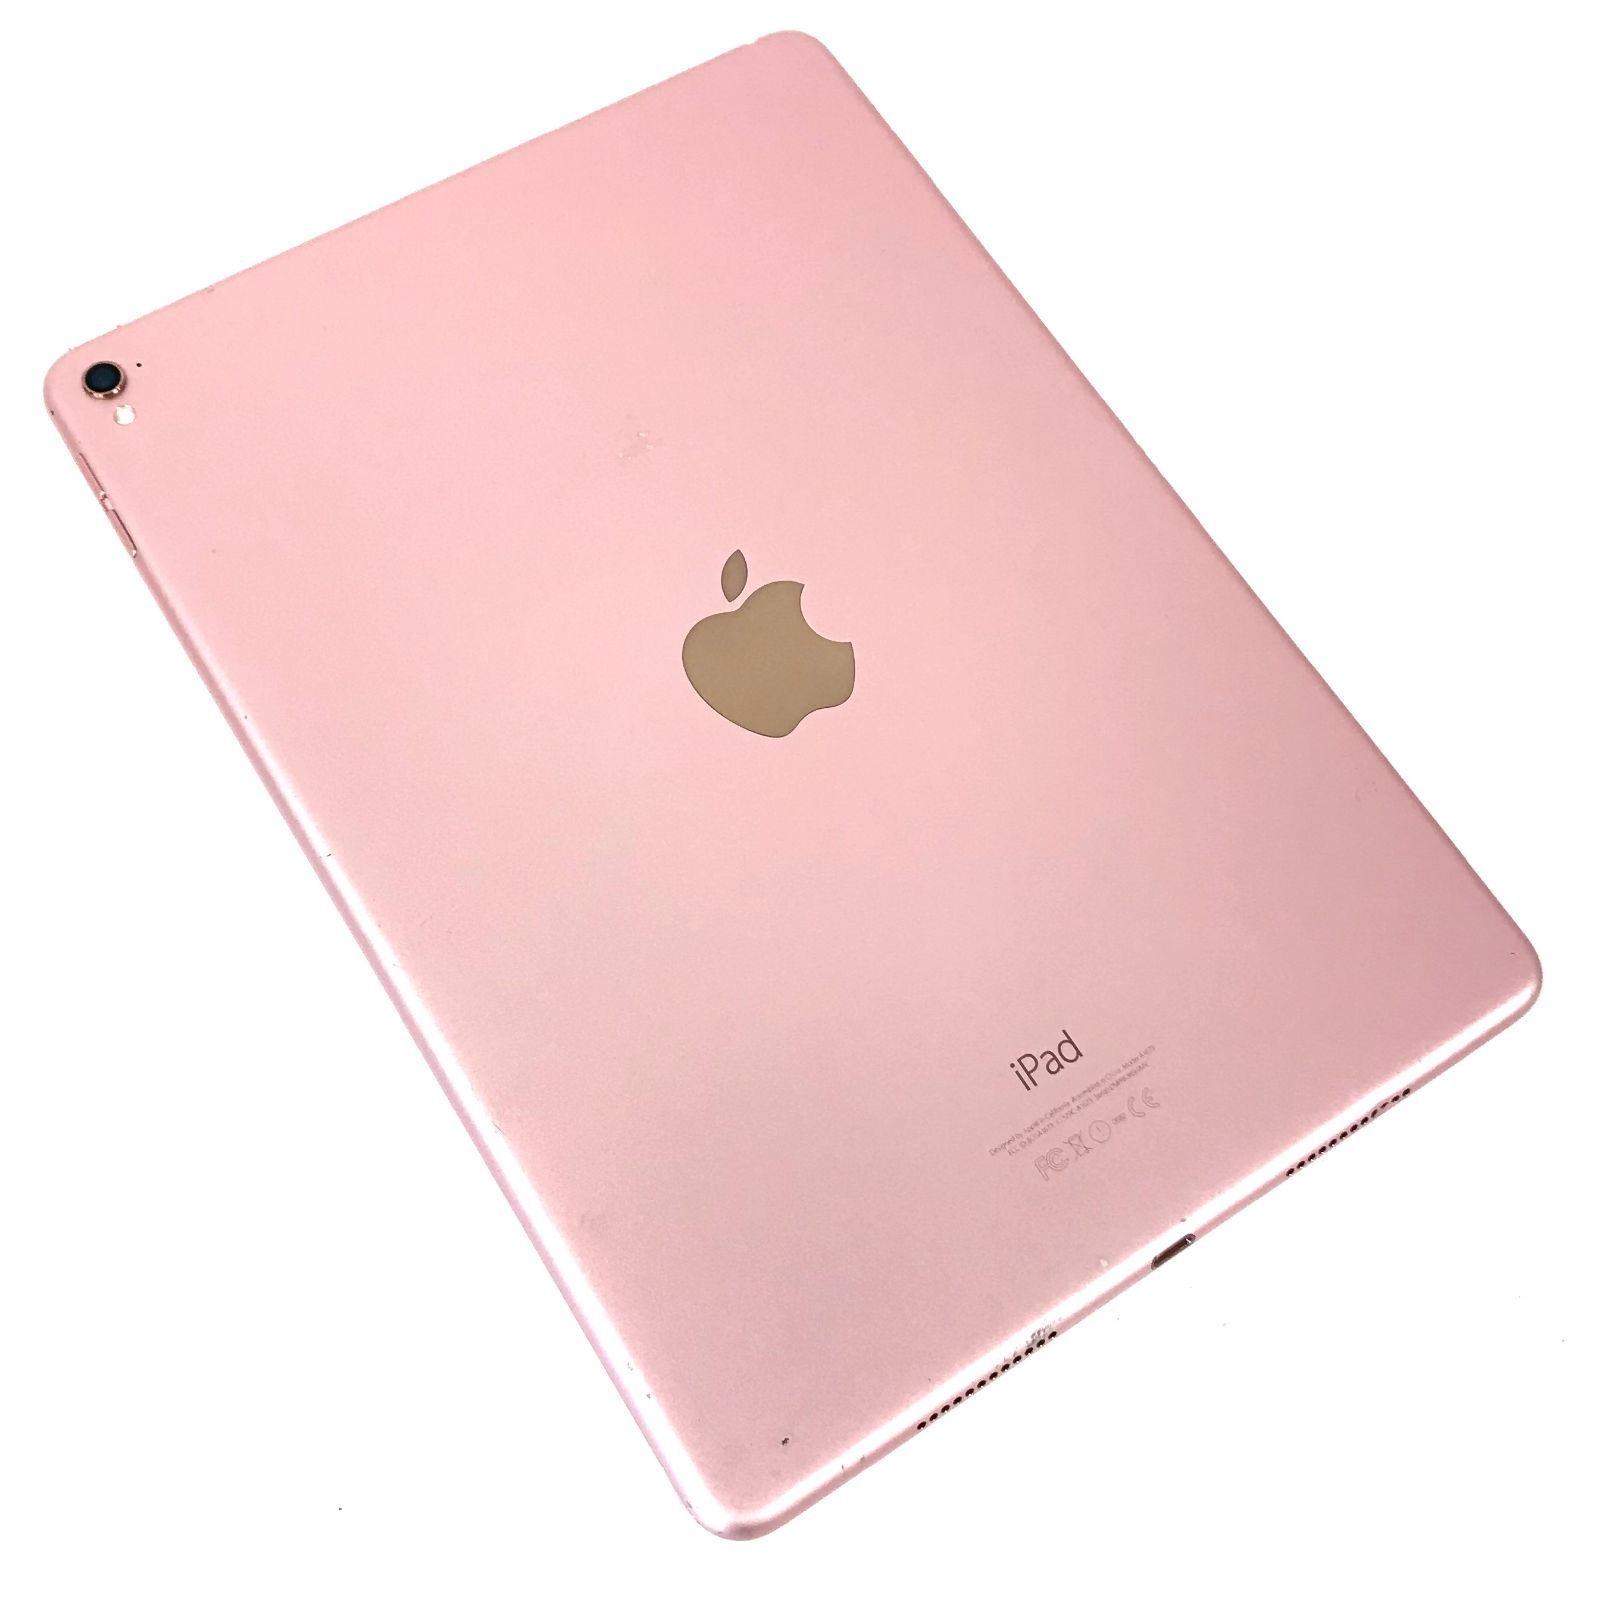 θ iPad Pro 9.7インチ Wi-Fi 128GB ローズゴールド - メルカリ